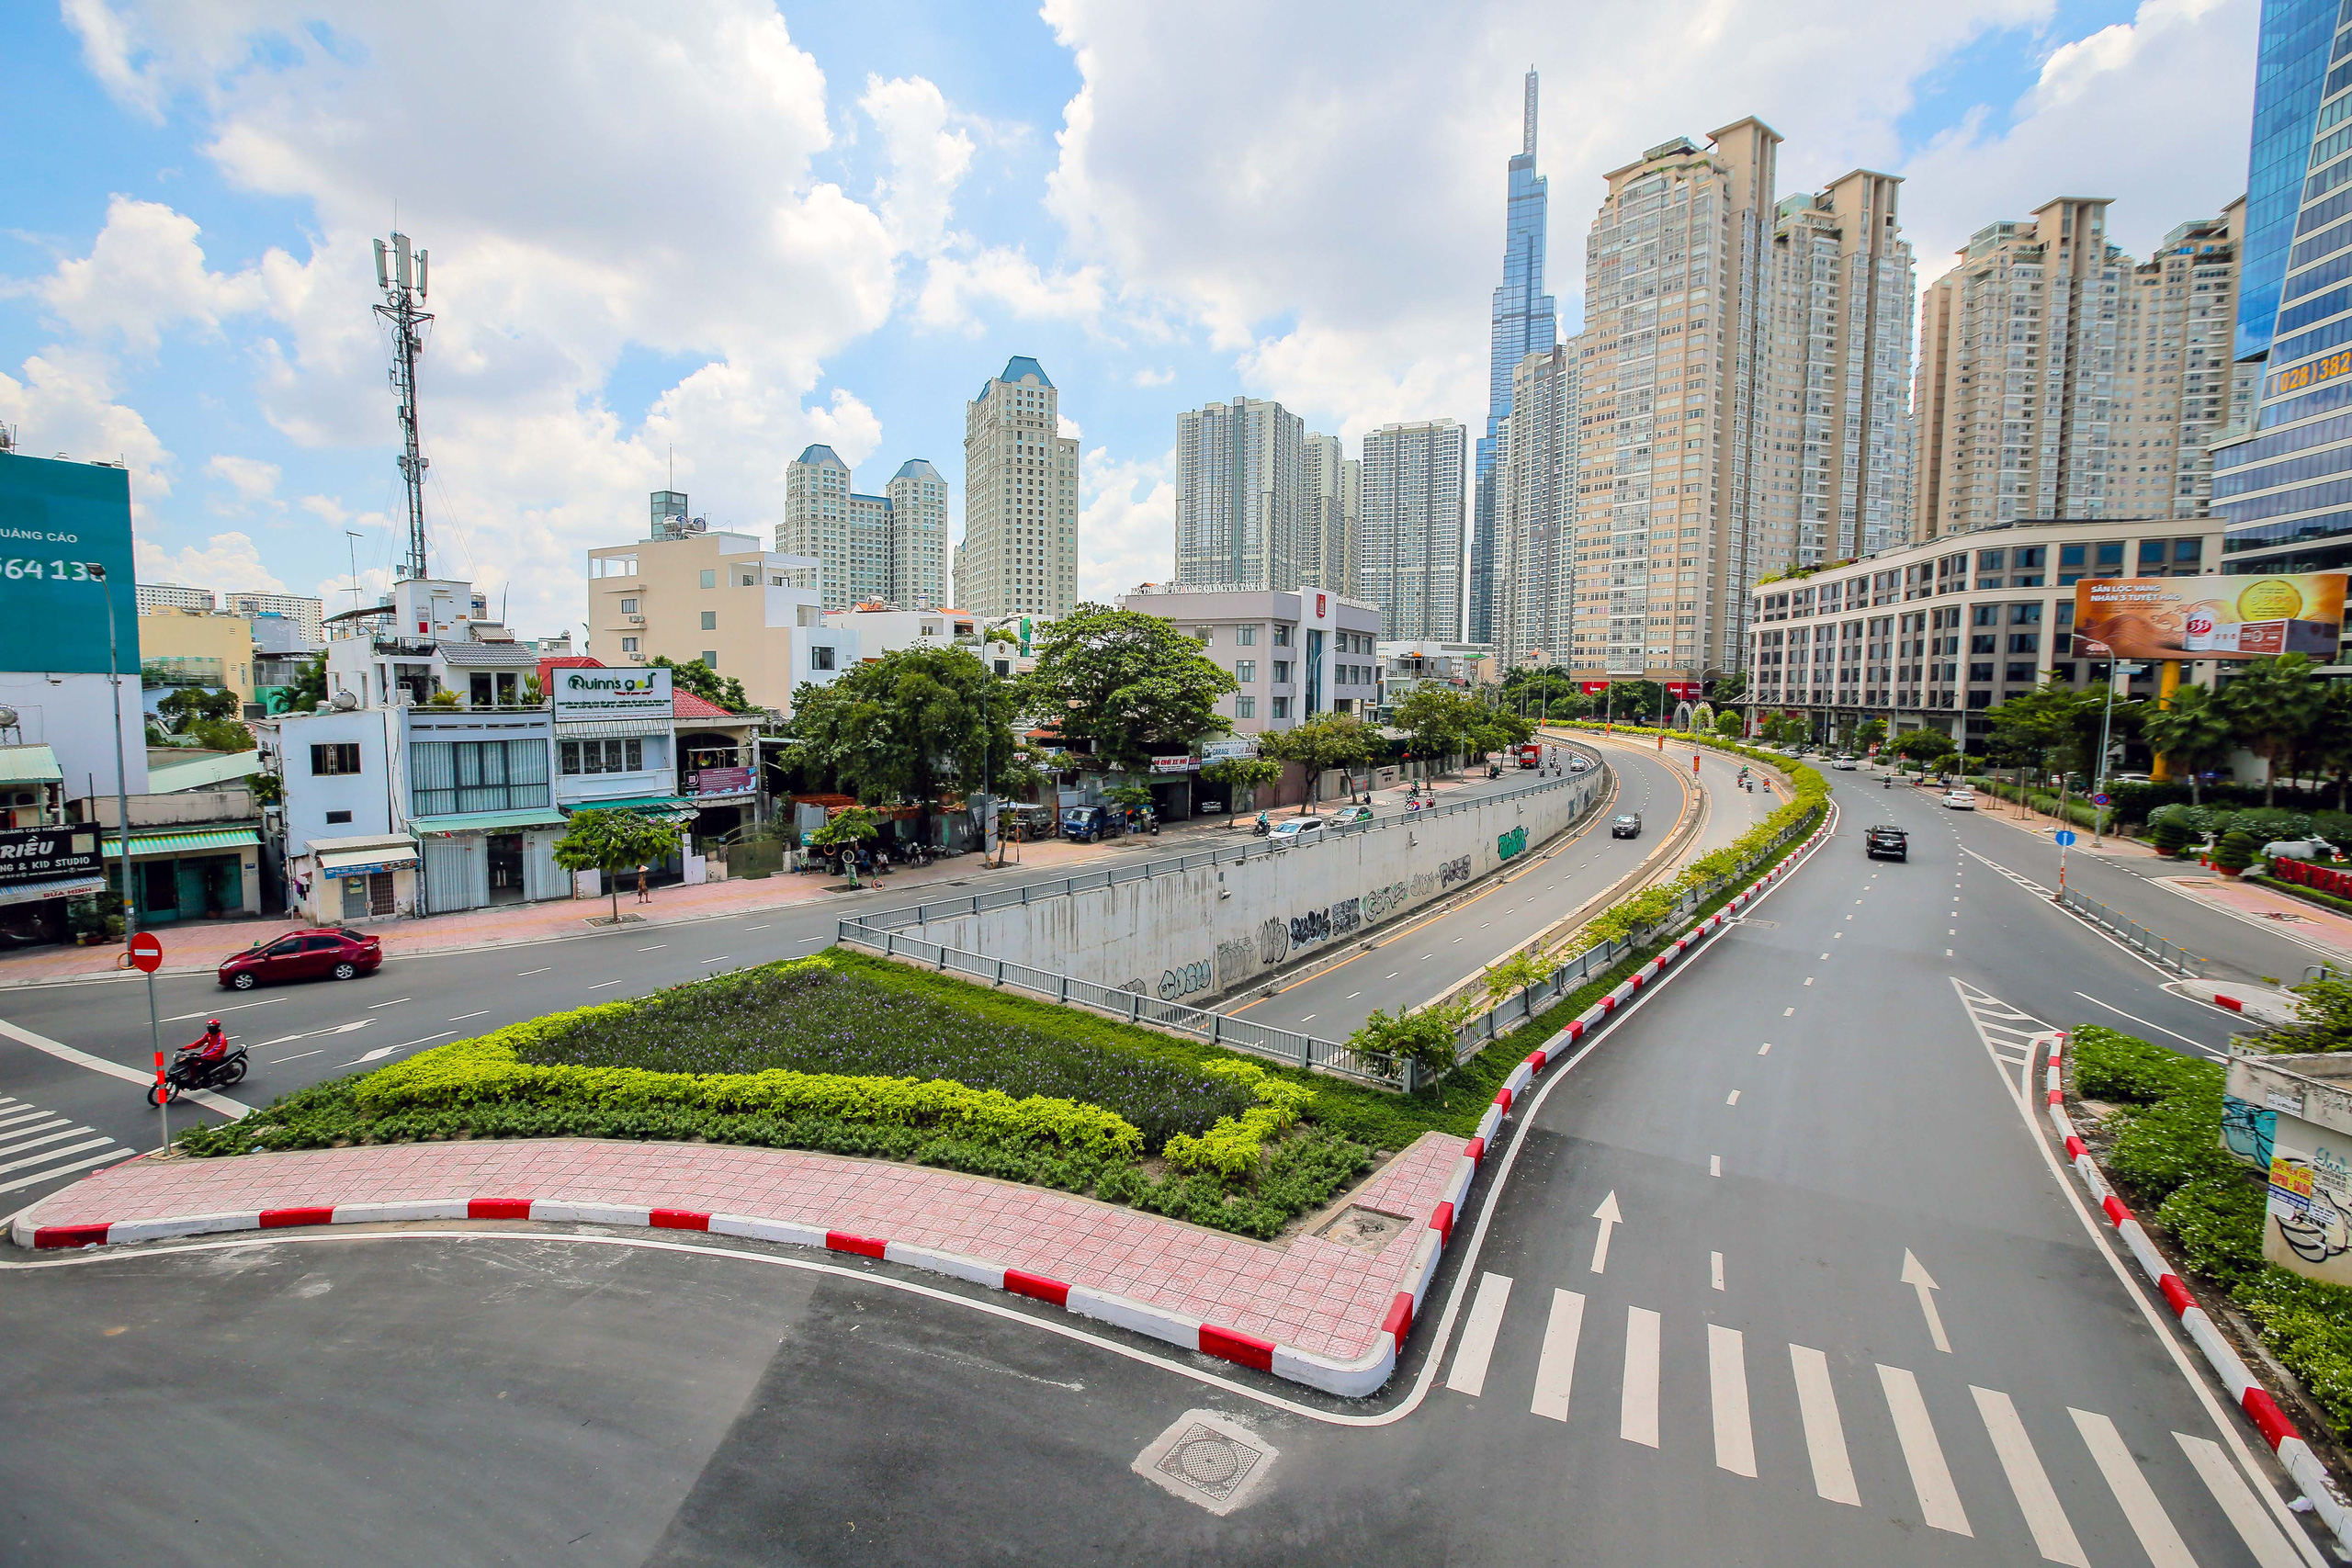 Đường phố TP HCM dịch Covid-19: Dù bị ảnh hưởng bởi dịch bệnh Covid-19, Sài Gòn vẫn sở hữu những hình ảnh đường phố đầy tính nhân văn và tận tâm. Cùng xem và cảm nhận.